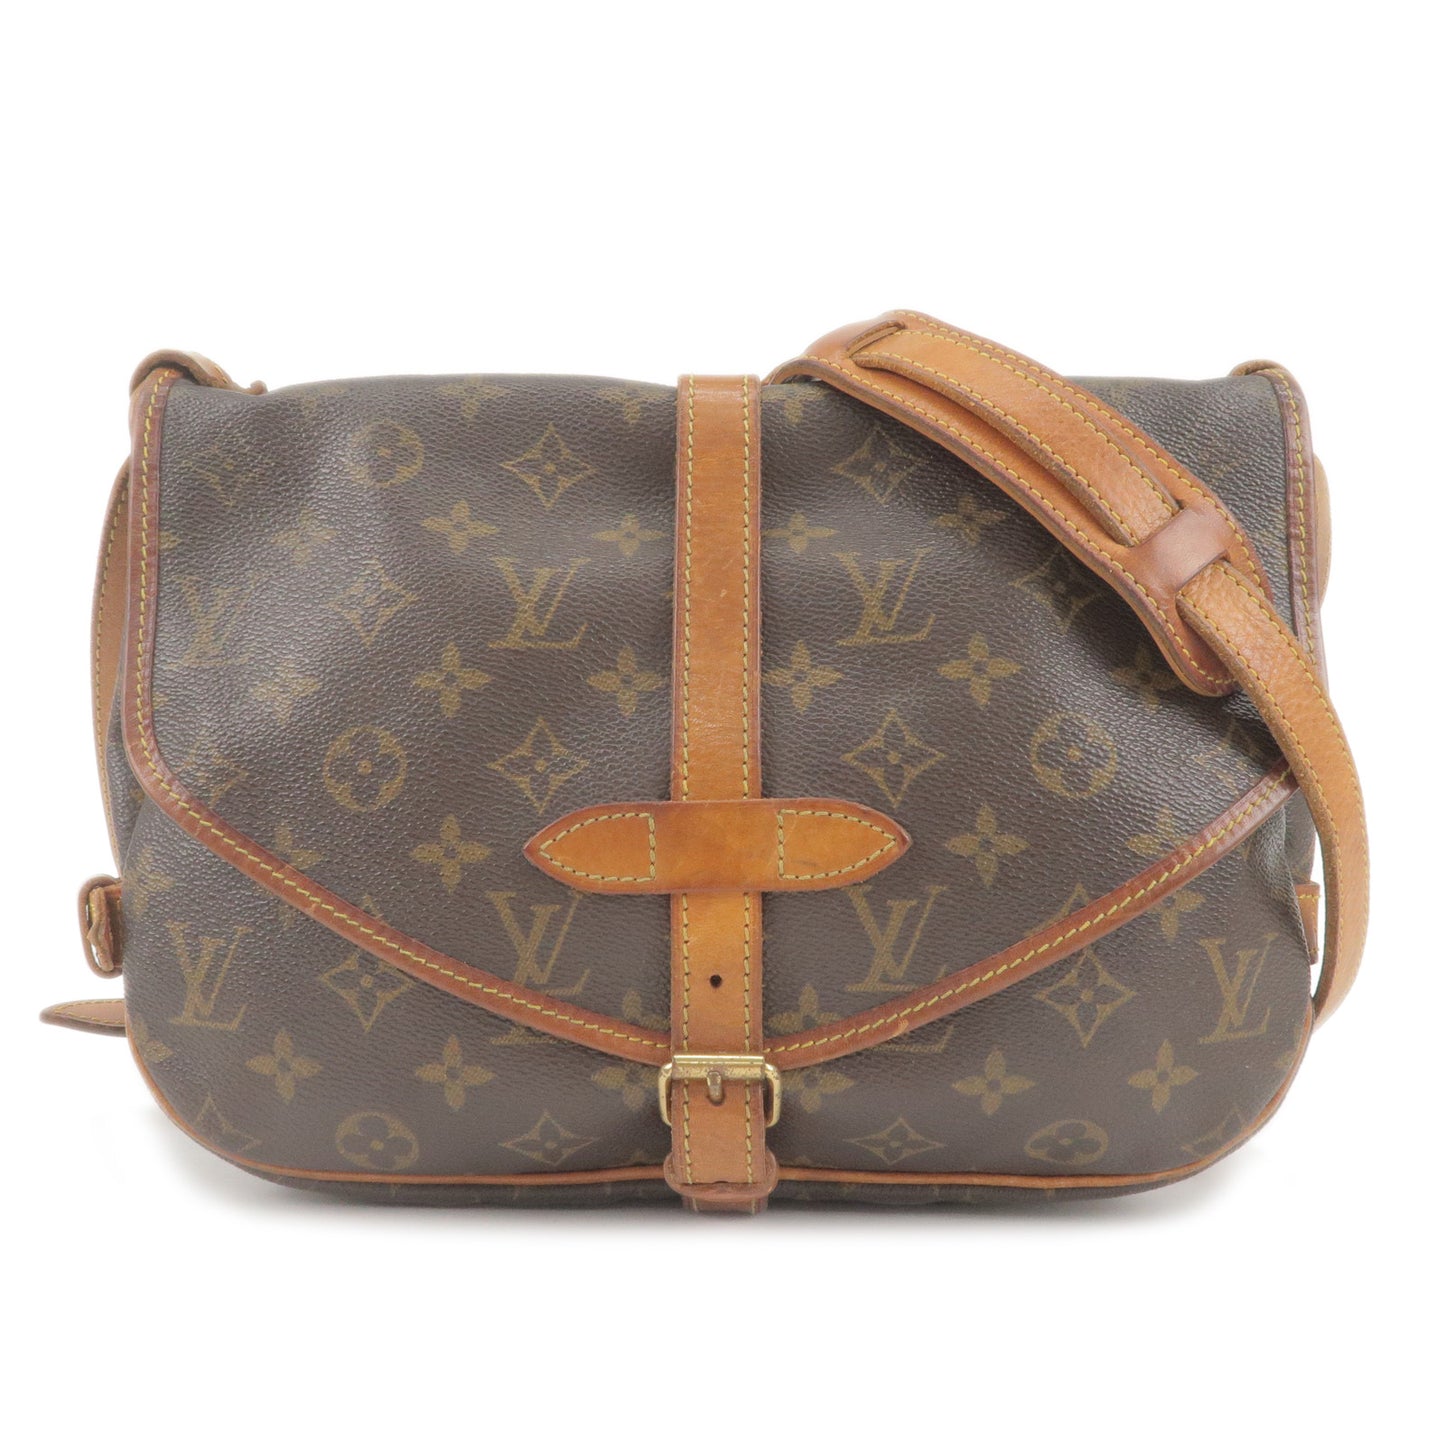 Authentic Louis Vuitton Monogram Saumur 30 Shoulder Cross Bag